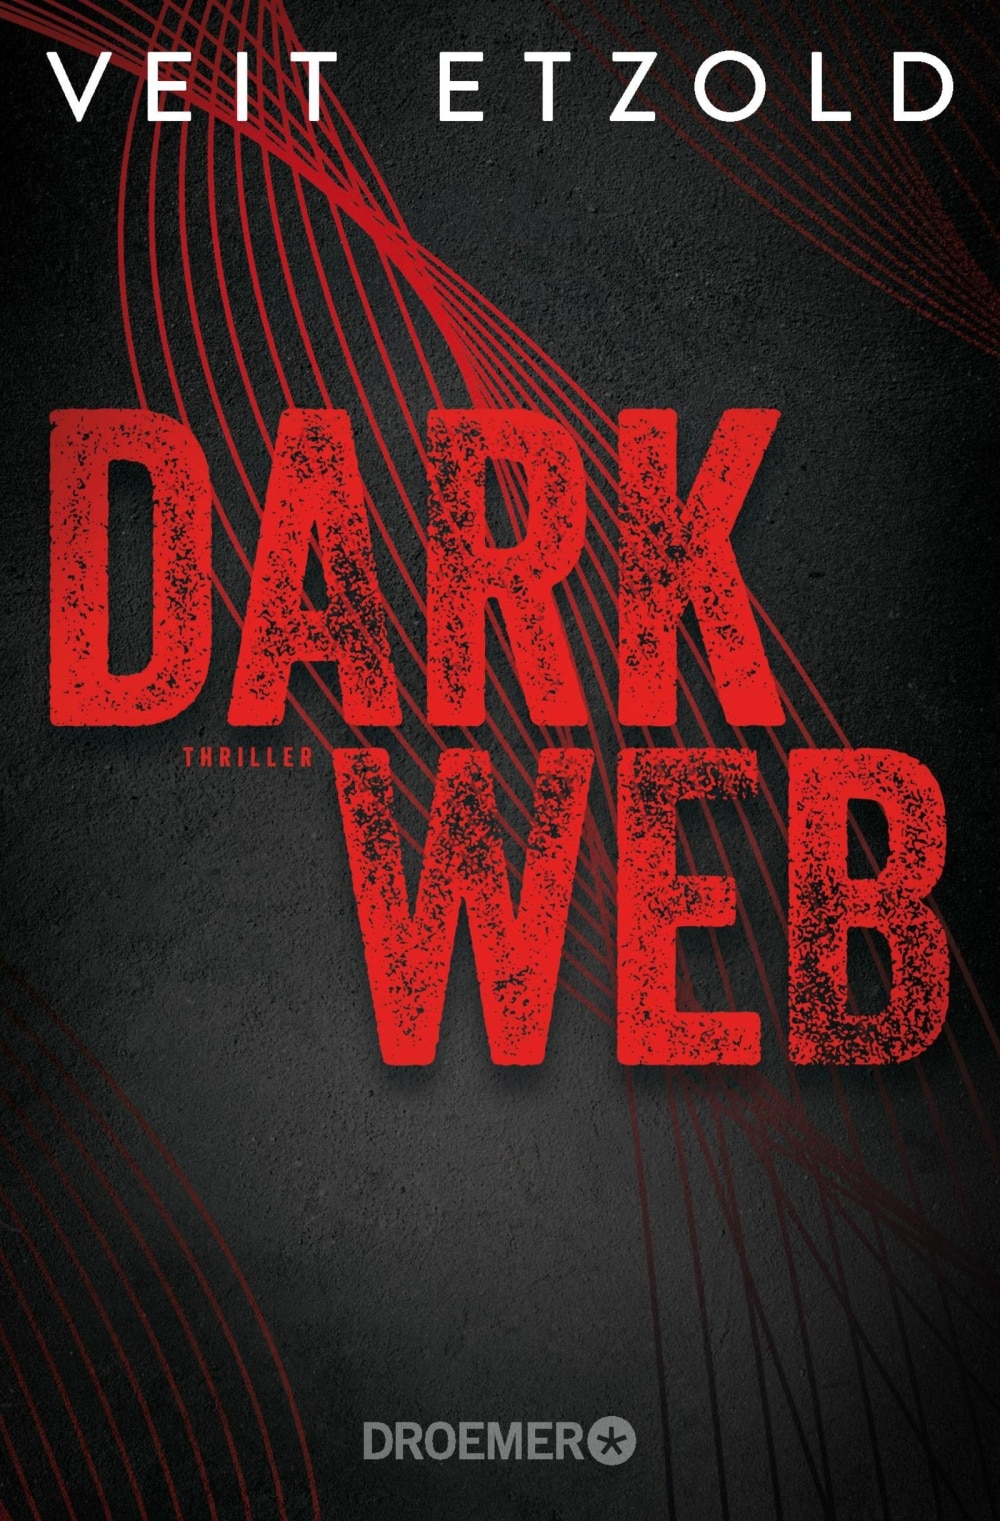 LITL003 [Podcast-Interview]mit Veit Etzold über das Buch: Dark Web